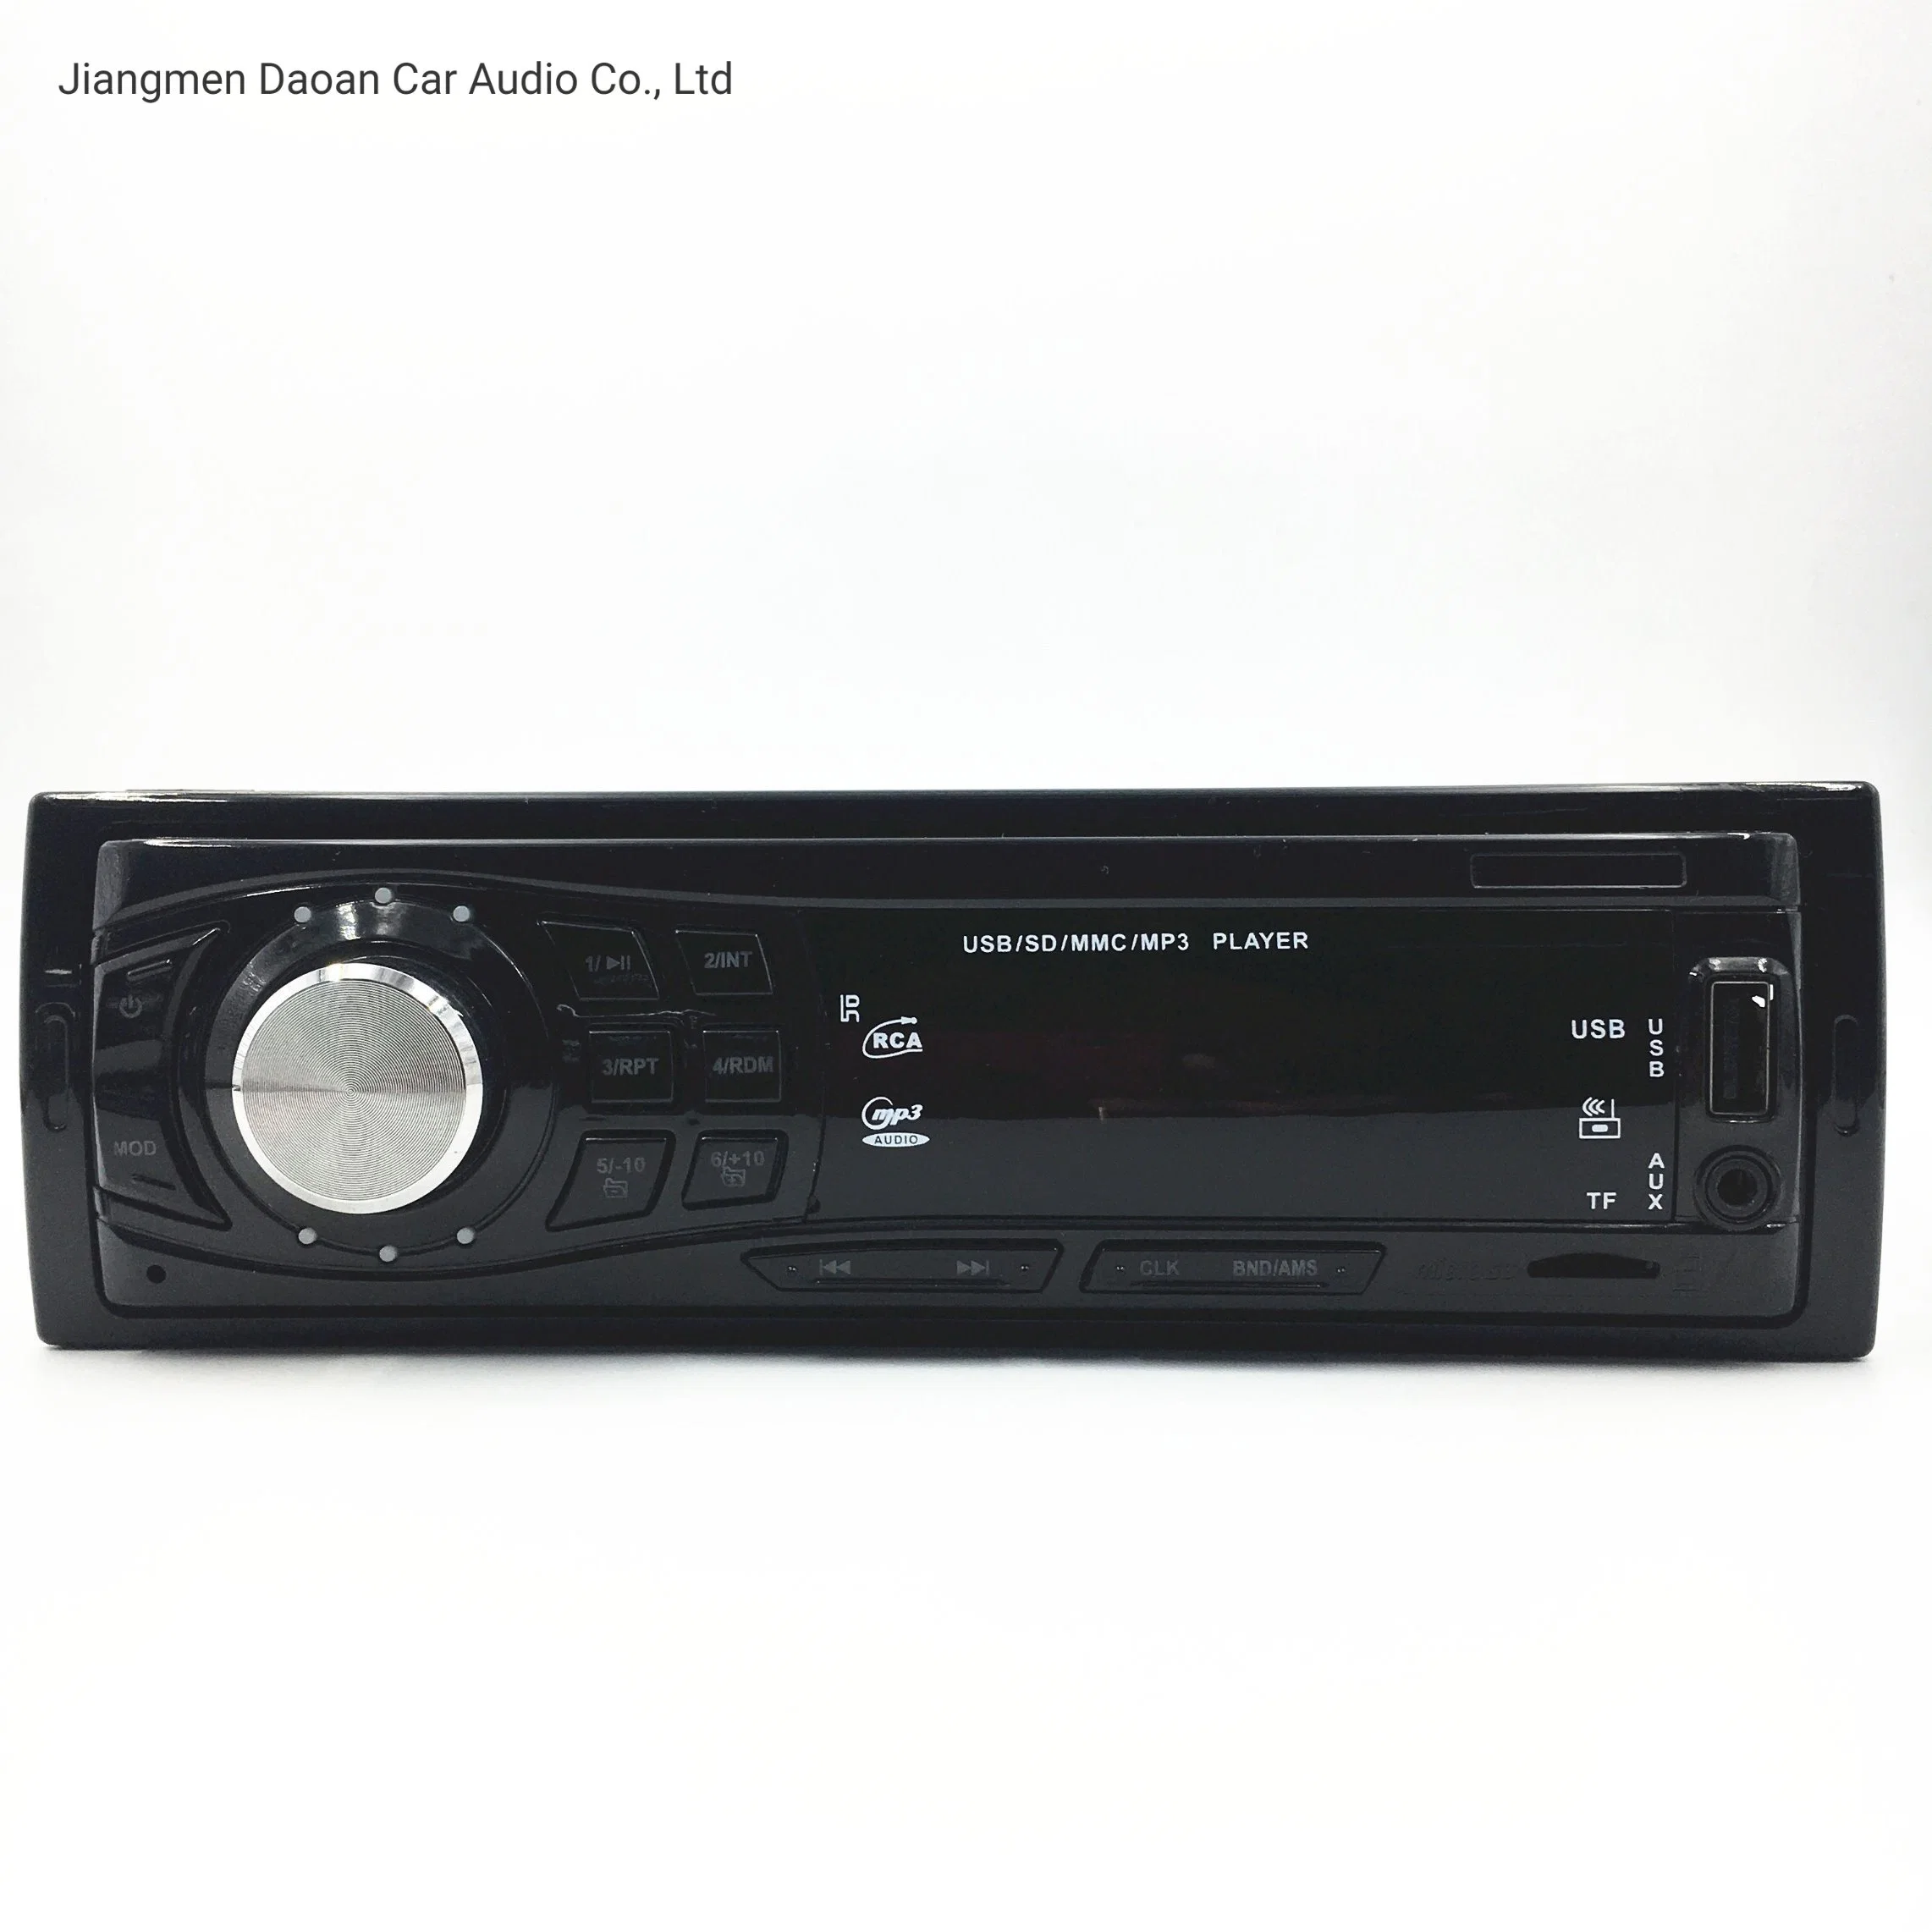 وحدة الرأس الصوتي MP3 الخاصة بالإلكترونيات الإستهلاكية للسيارة بحجم DIN واحد